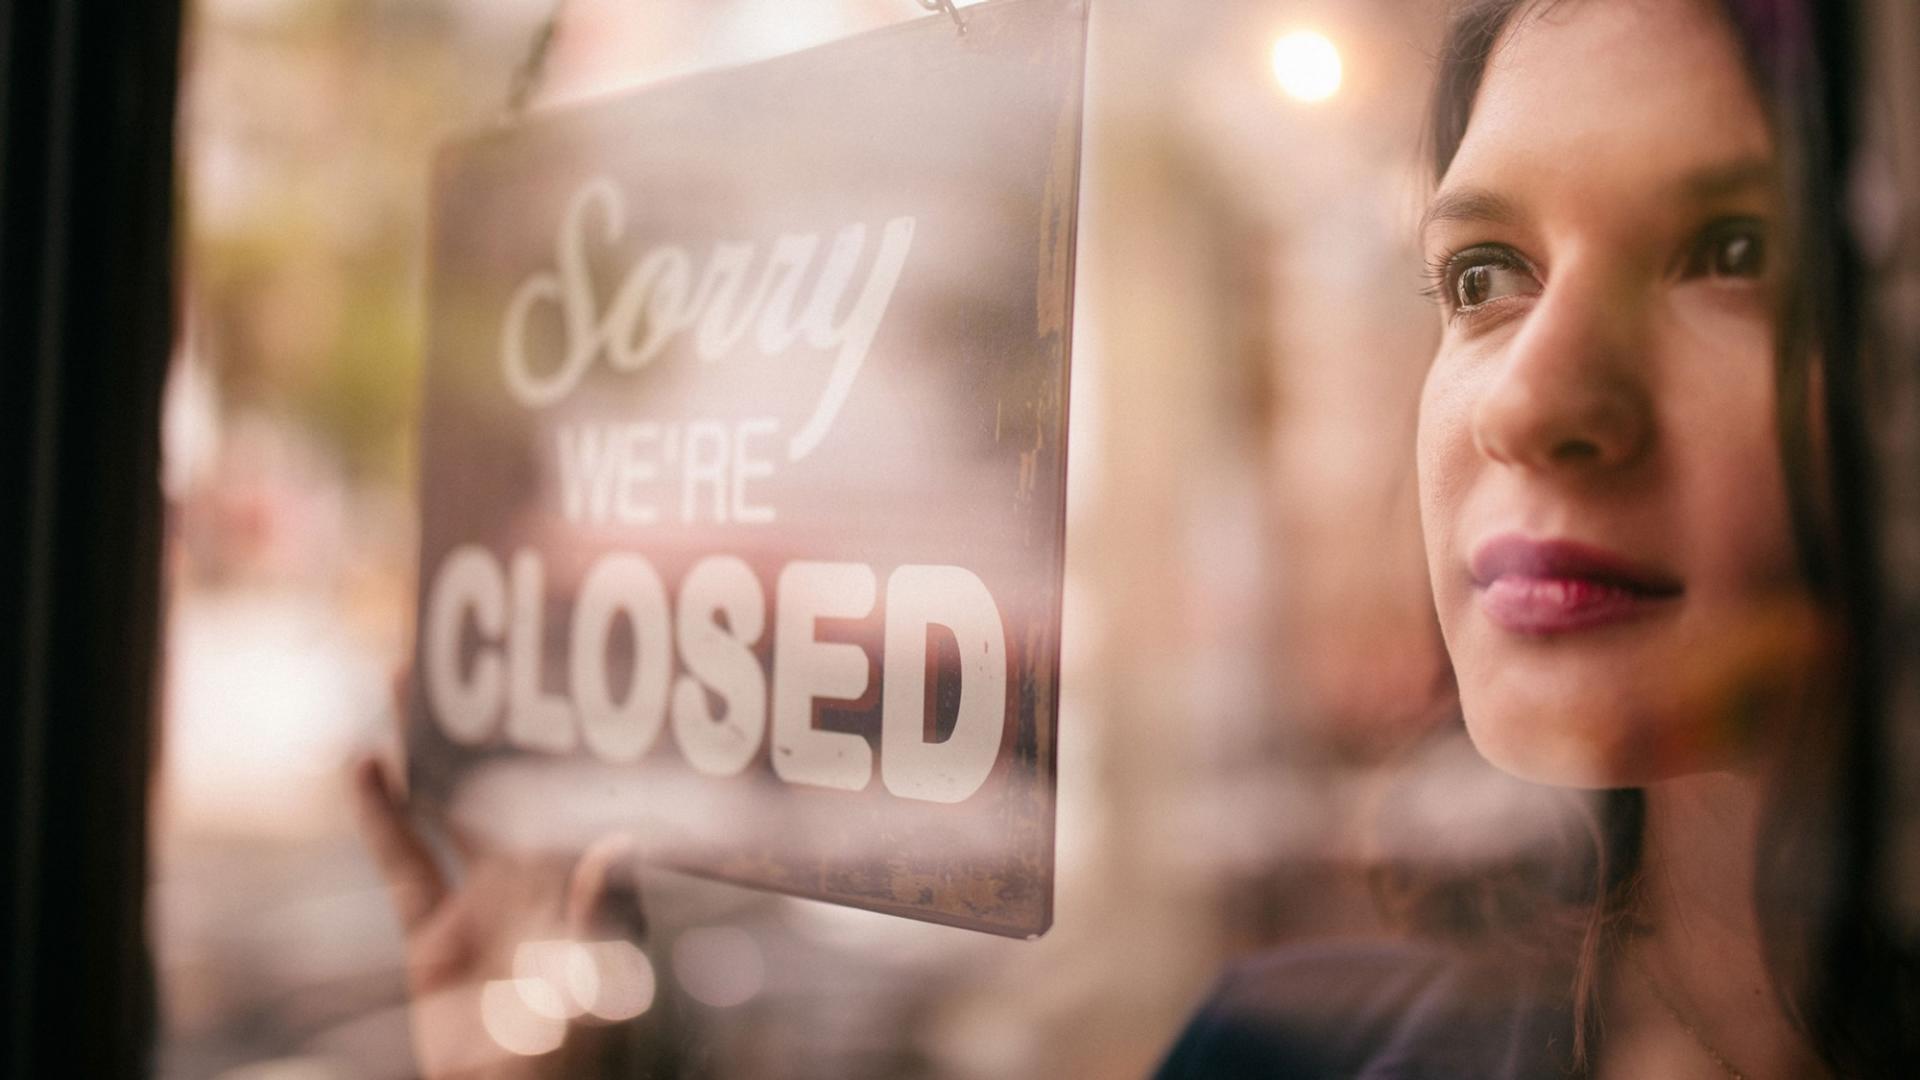 Frau ist hinter einer Glasscheibe, mit einem Schild auf dem "Sorry we´re closed" geschrieben ist, zu sehen.